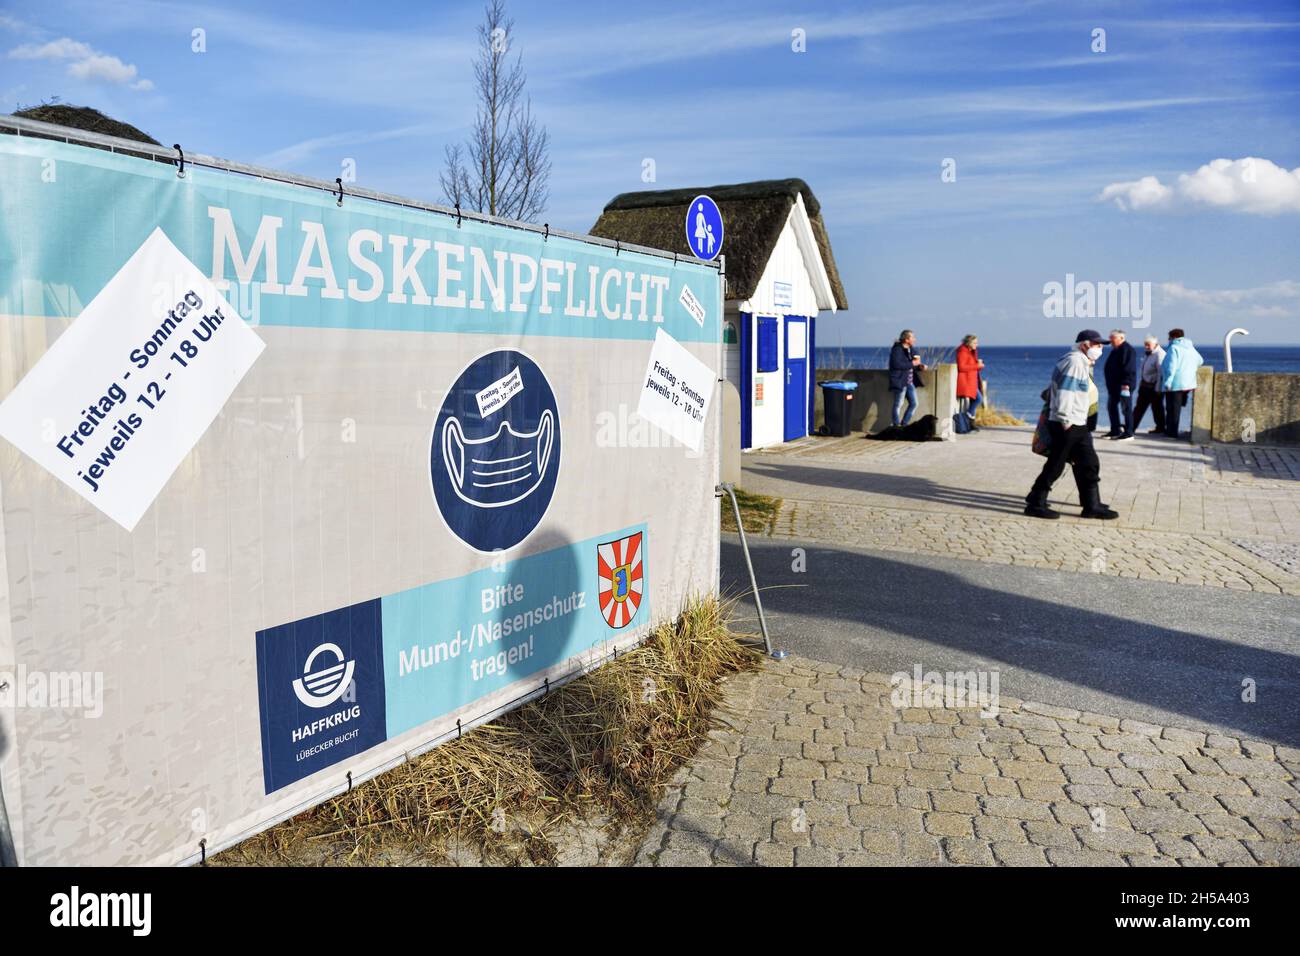 Maskenpflicht-Schild an der Strandpromenade in Haffkrug, Scharbeutz, Schleswig-Holstein, Deutschland, Europa Foto Stock